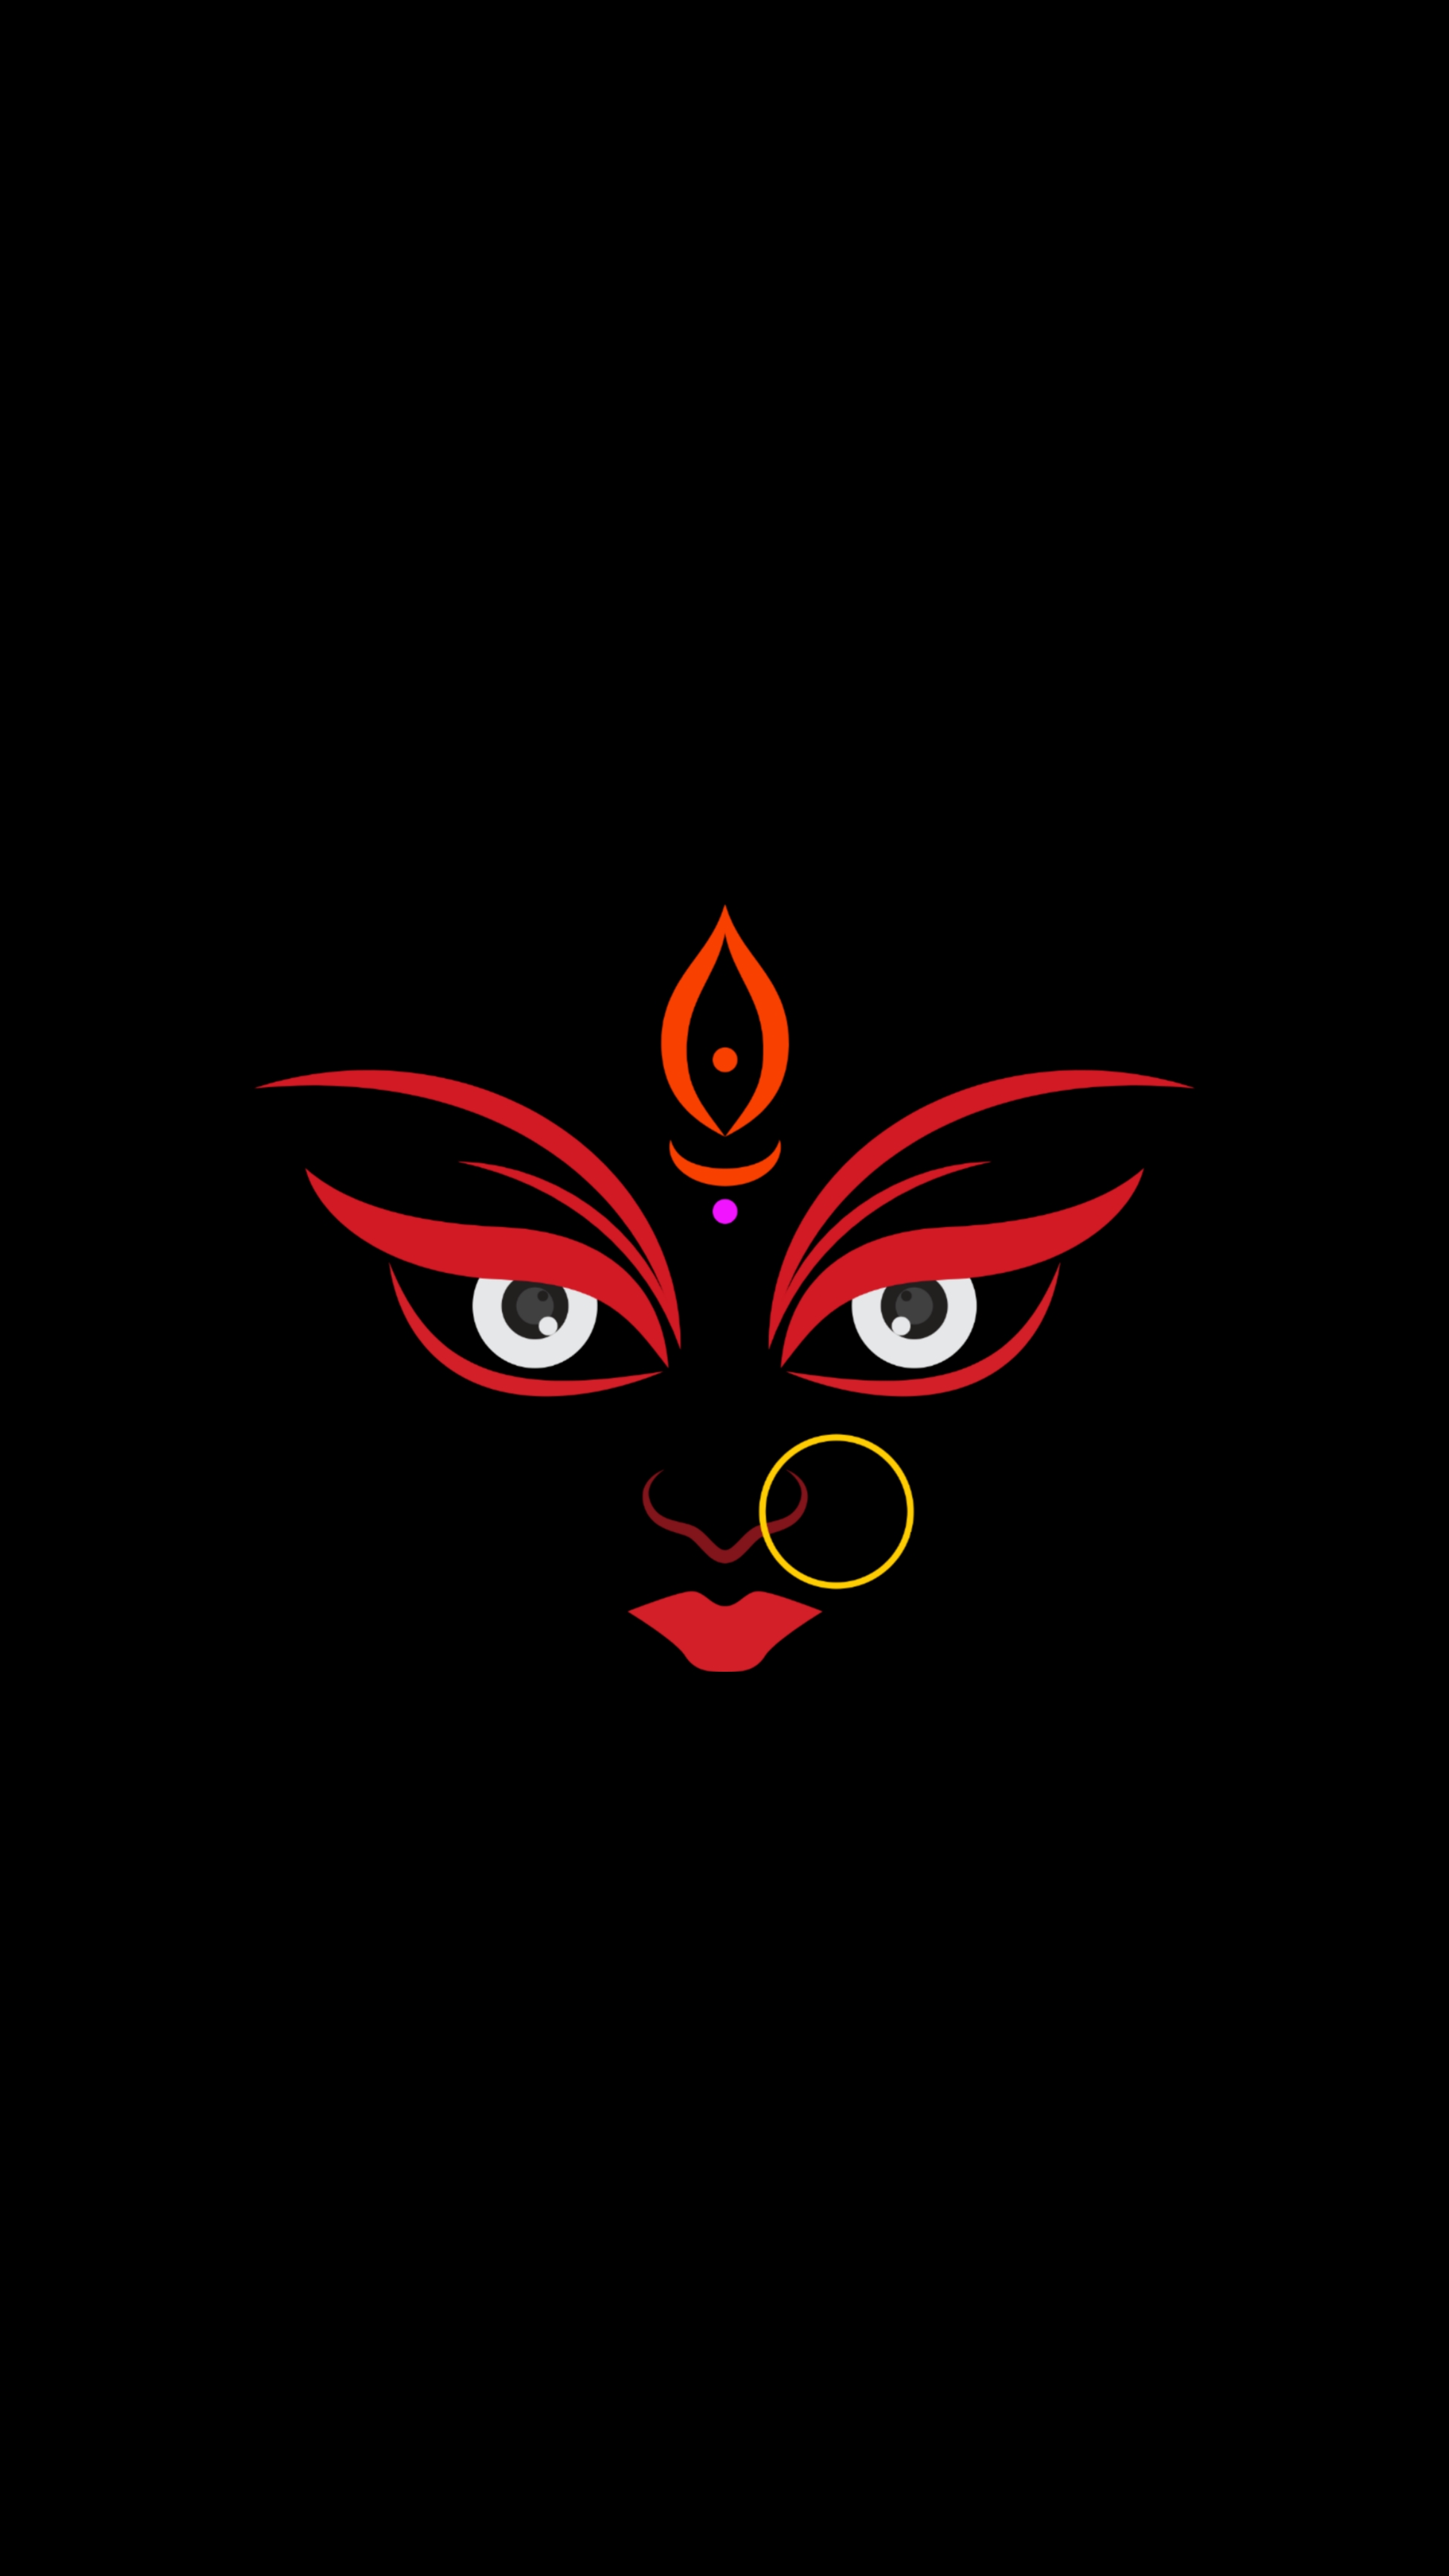 Durga ji Dark Black wallpaper images